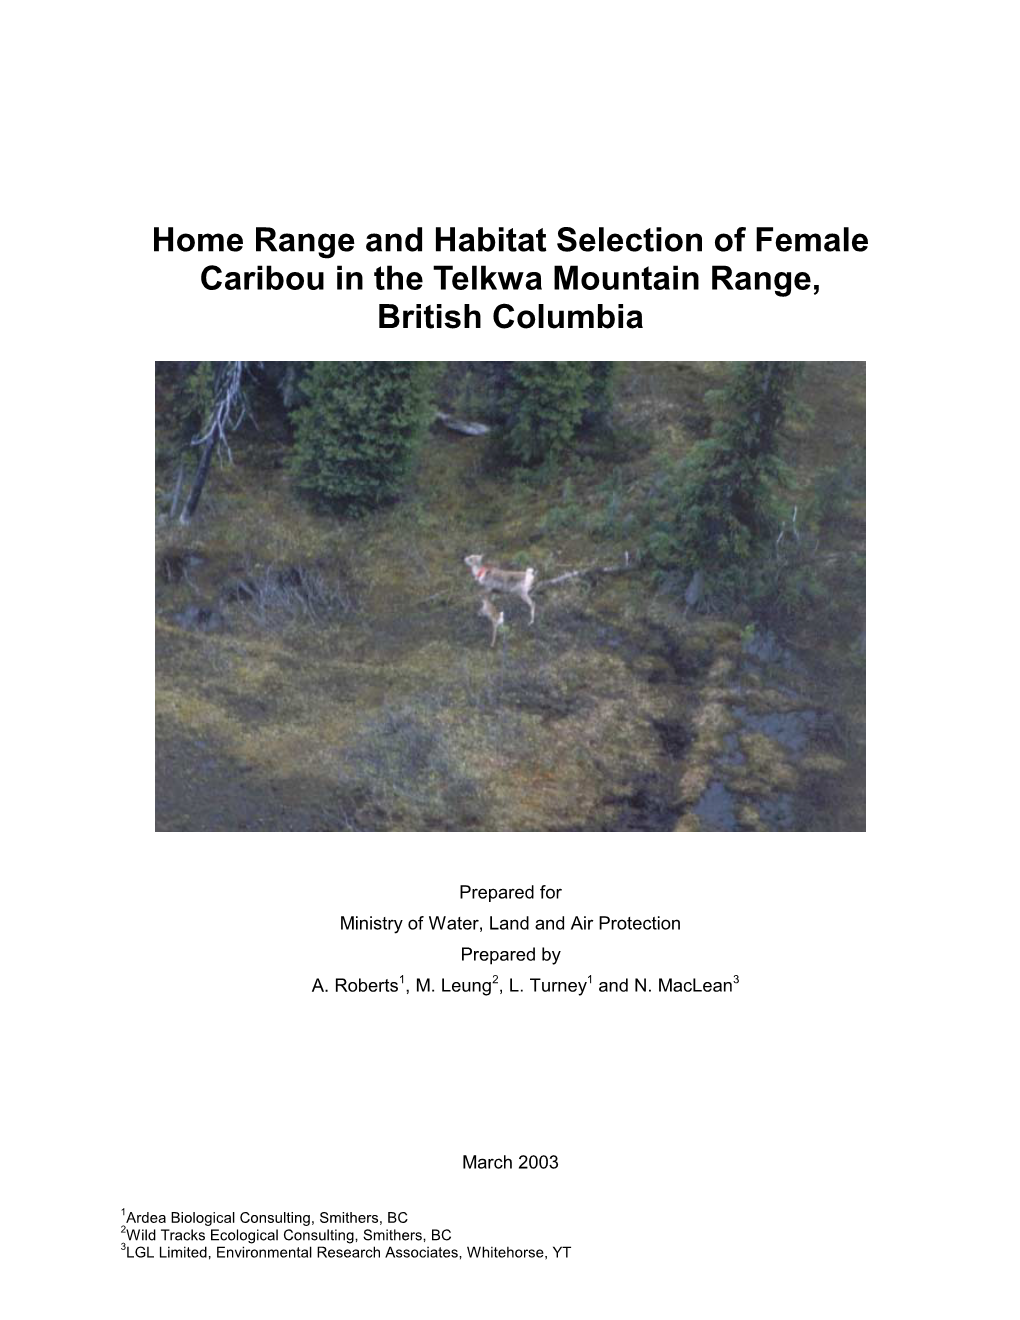 Habitat Selection, Female Caribou, Telkwa Range. Roberts Et